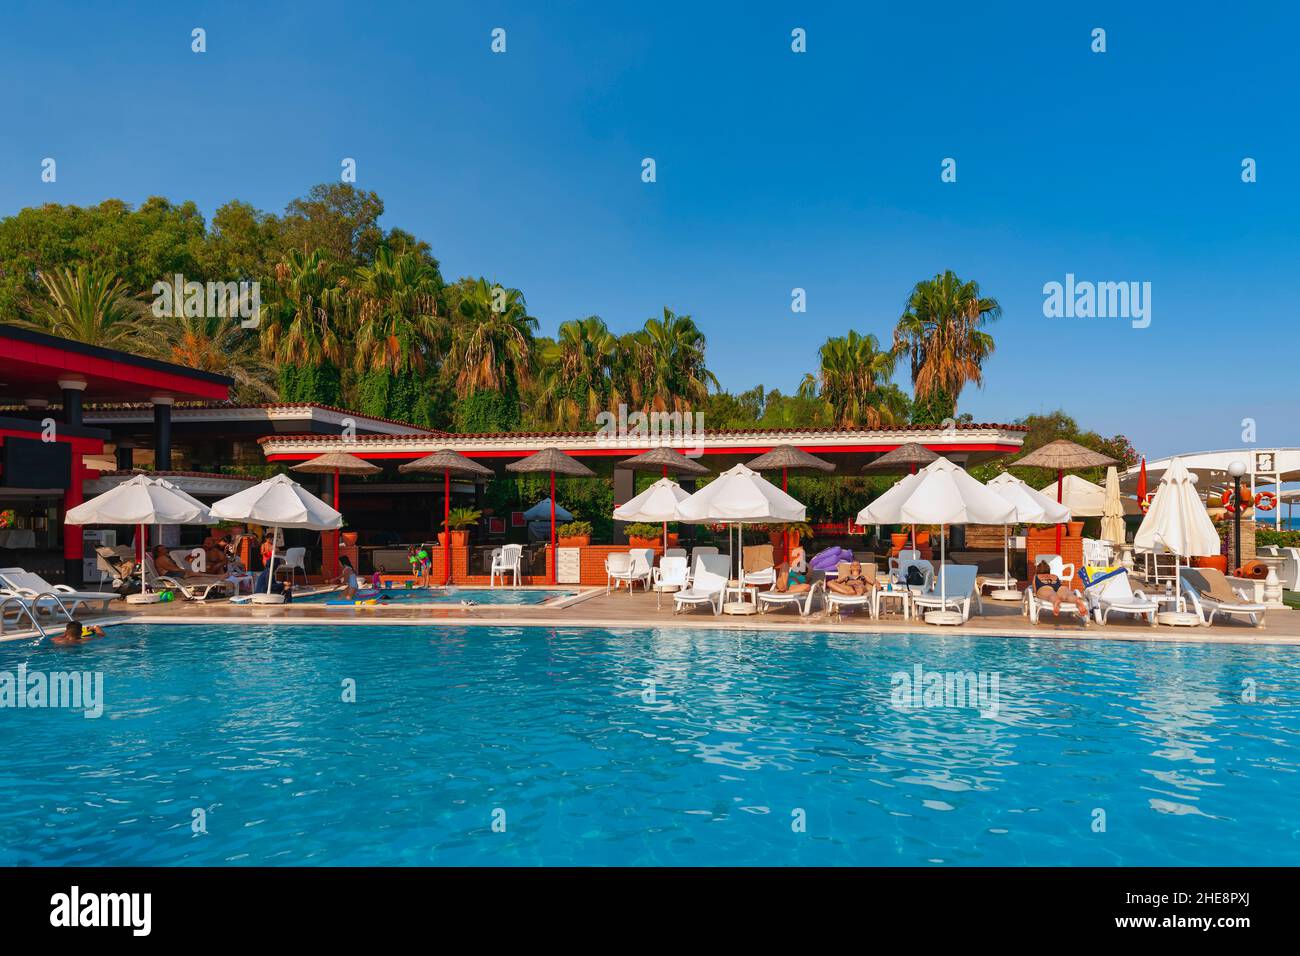 Hotel Pool And Guests At Lara Beach, Antalya, Turkey Stock Photo